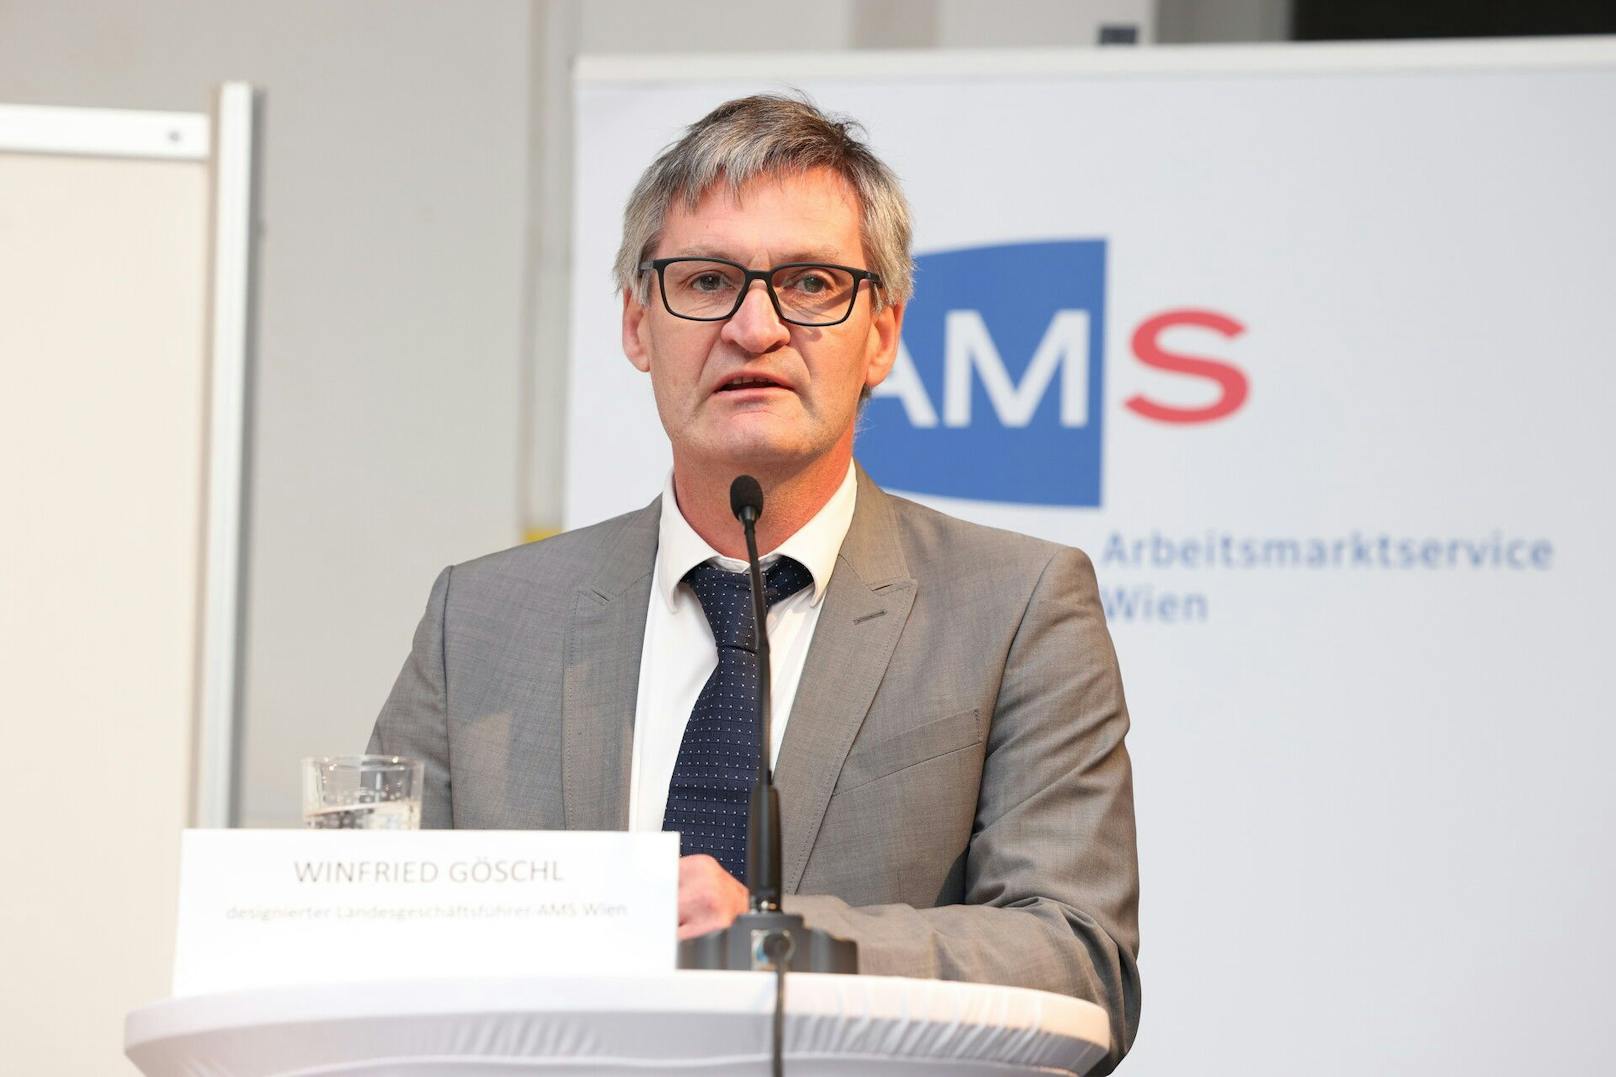 AMS-Programm mit 15.000 Euro pro Kopf und Jahr